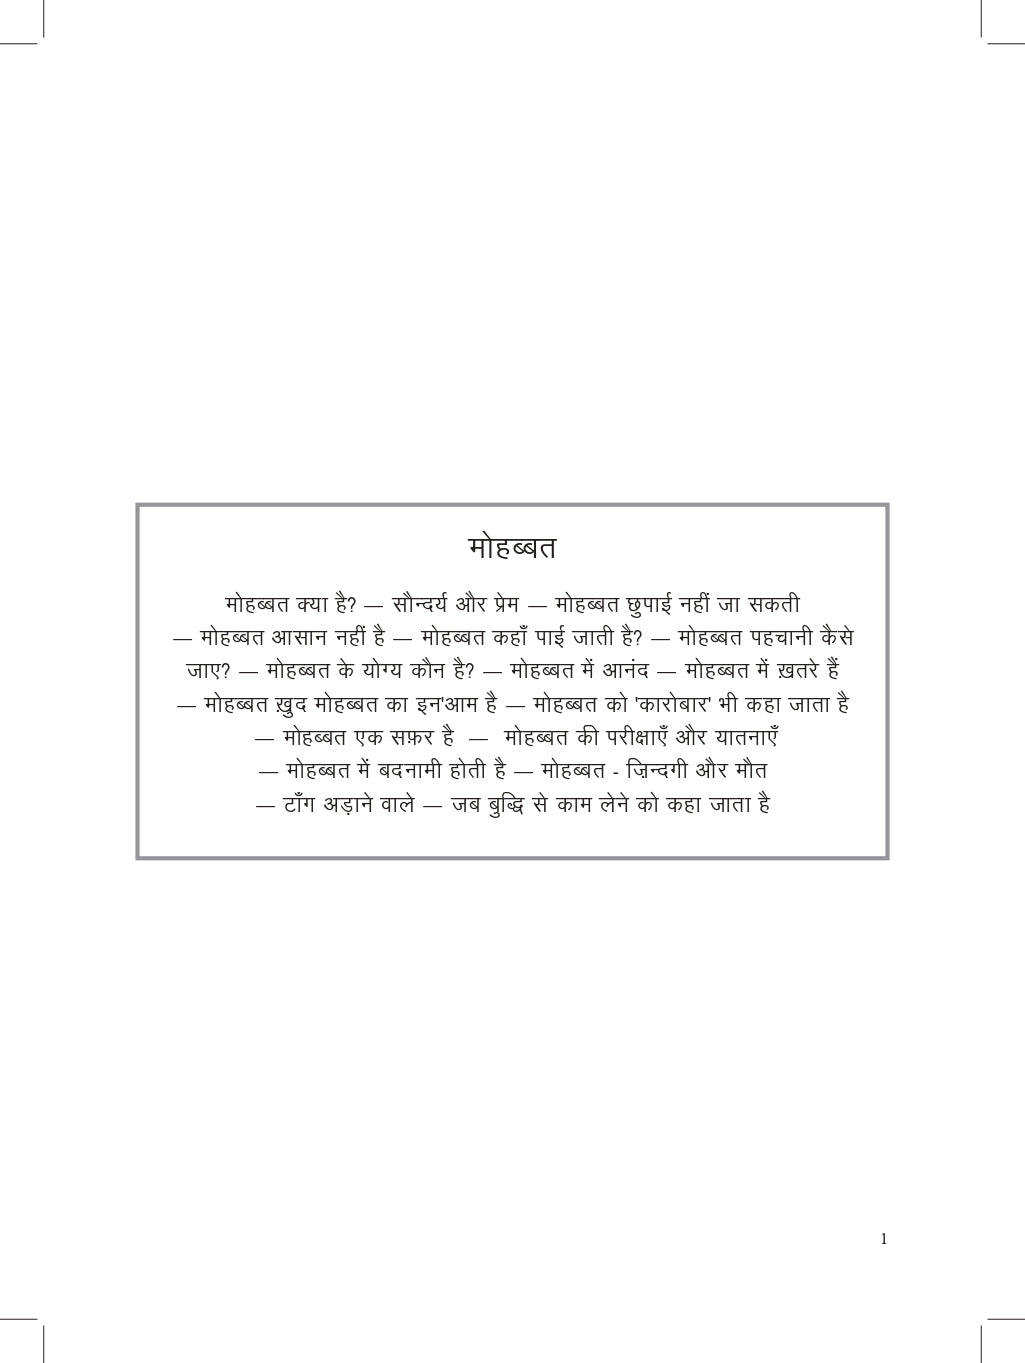 Hazaar Dastaan e Ishq (Hindi)